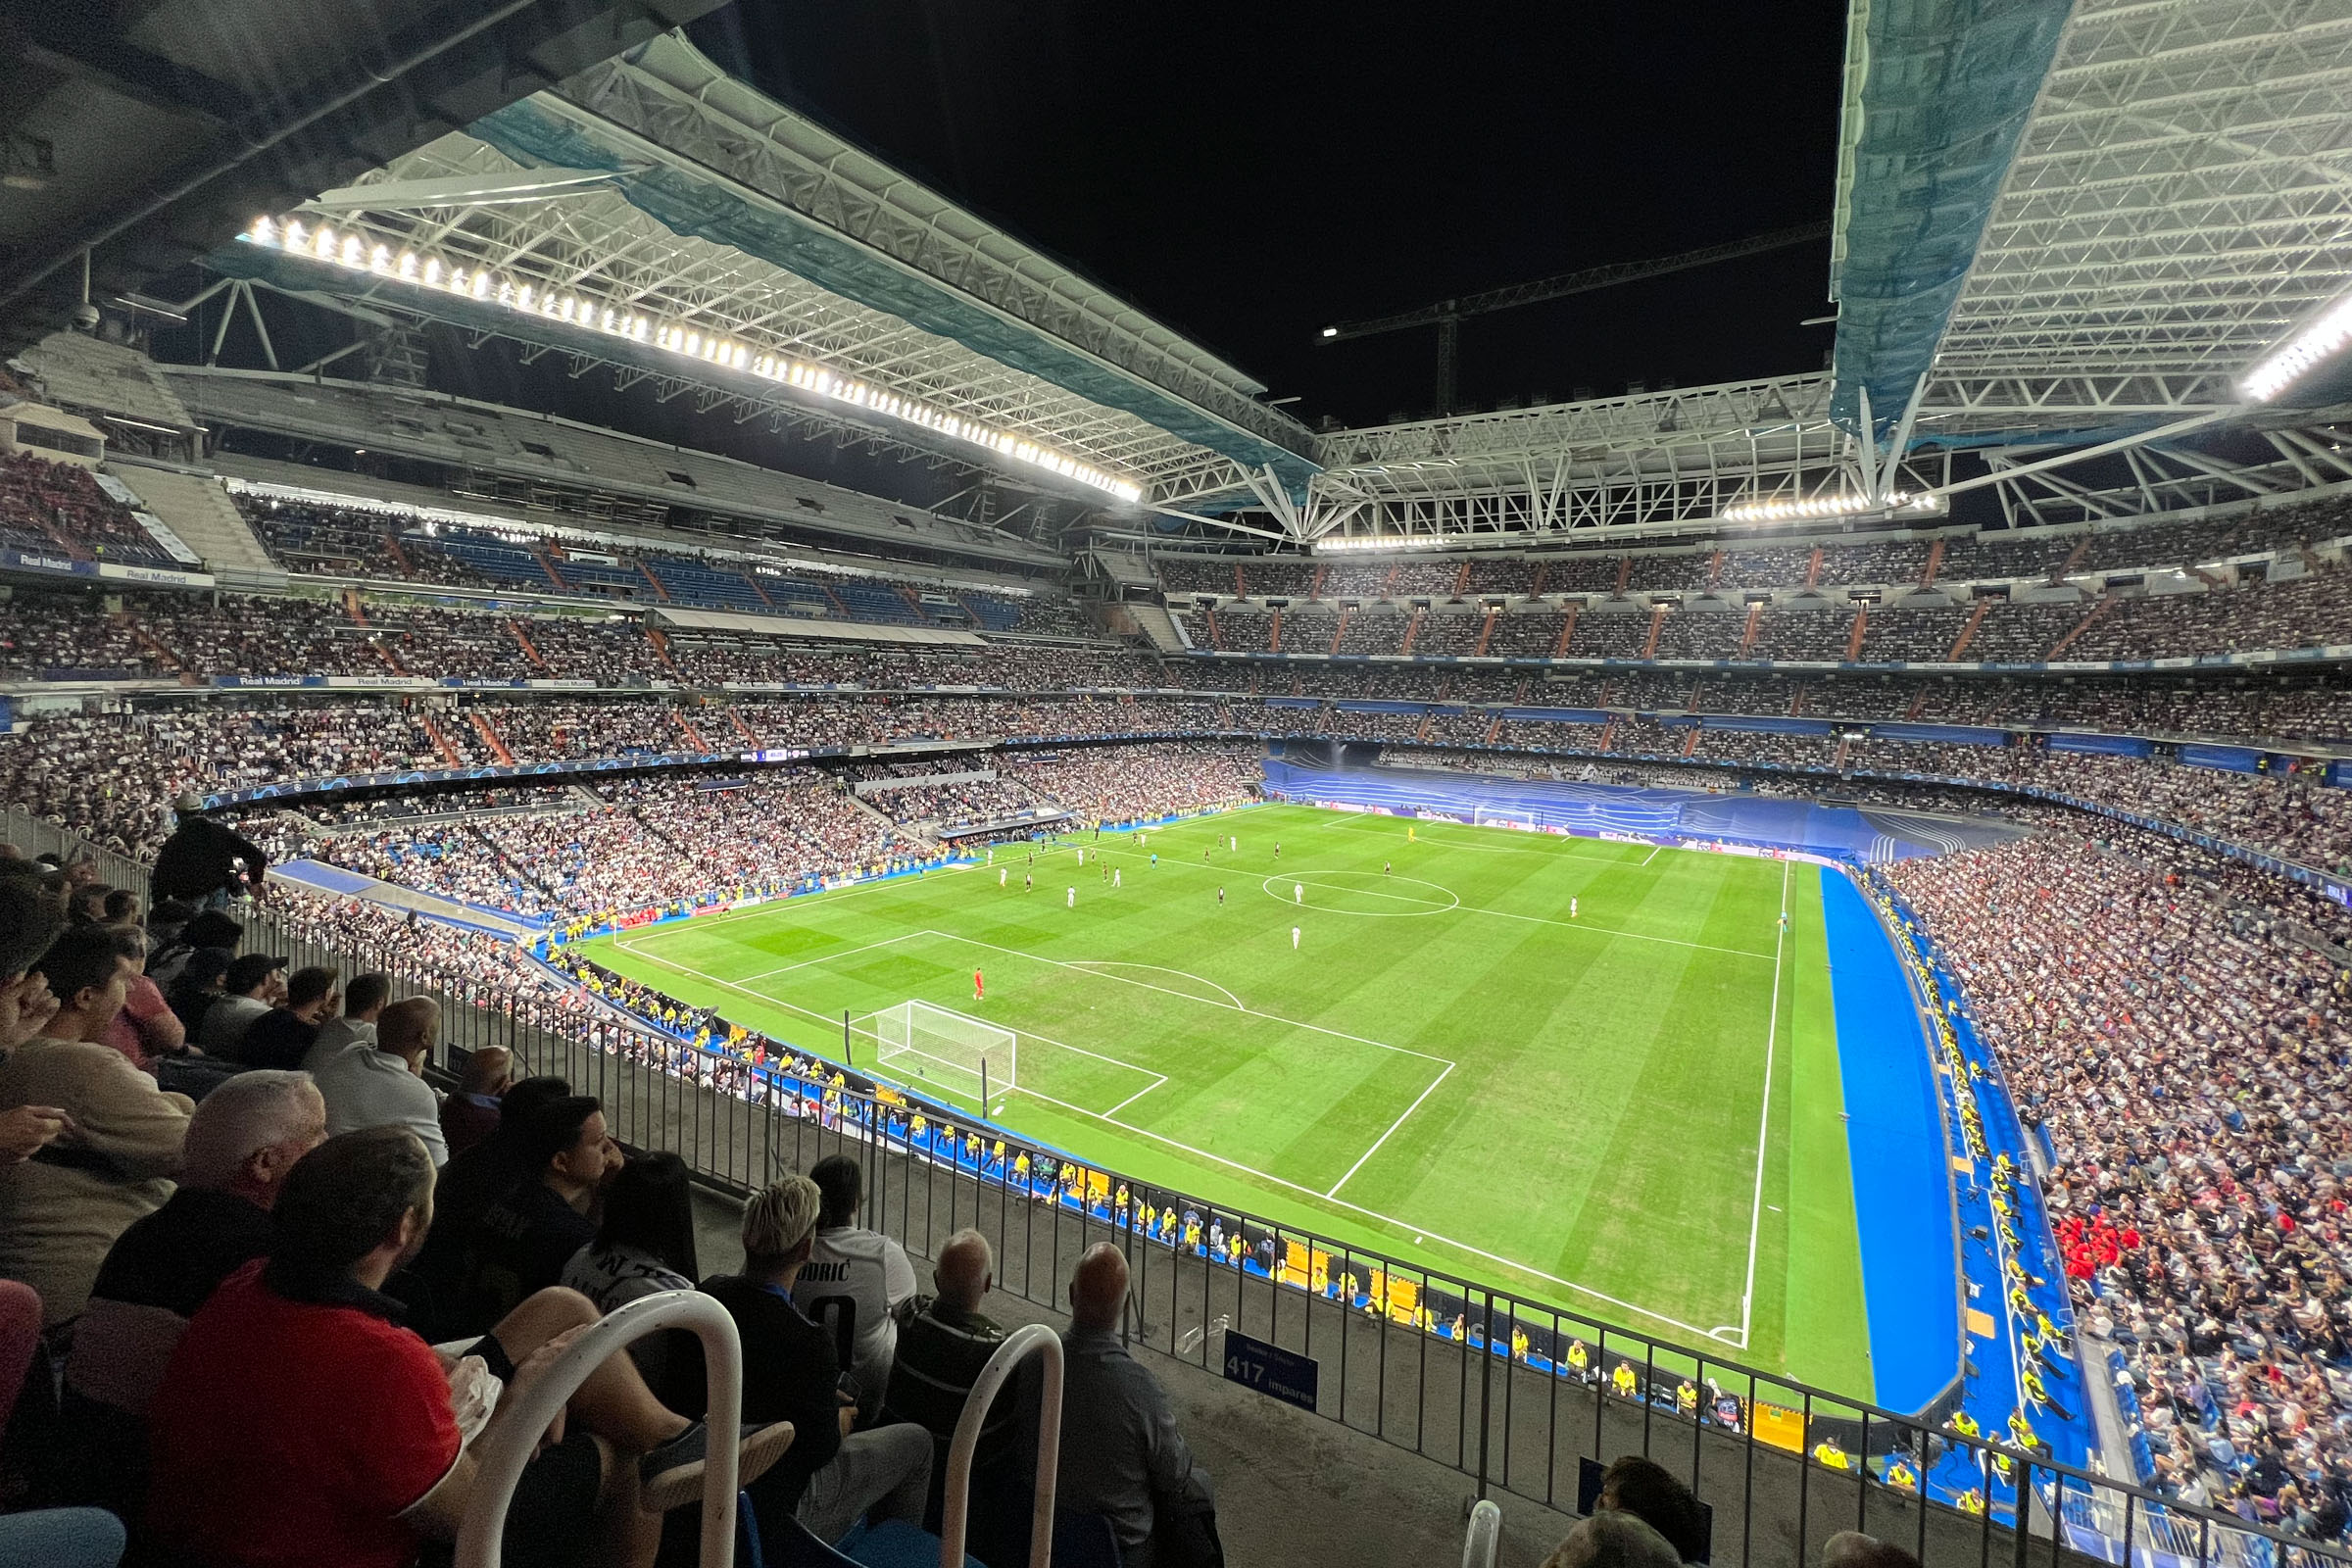 Estádio Santiago Bernabéu